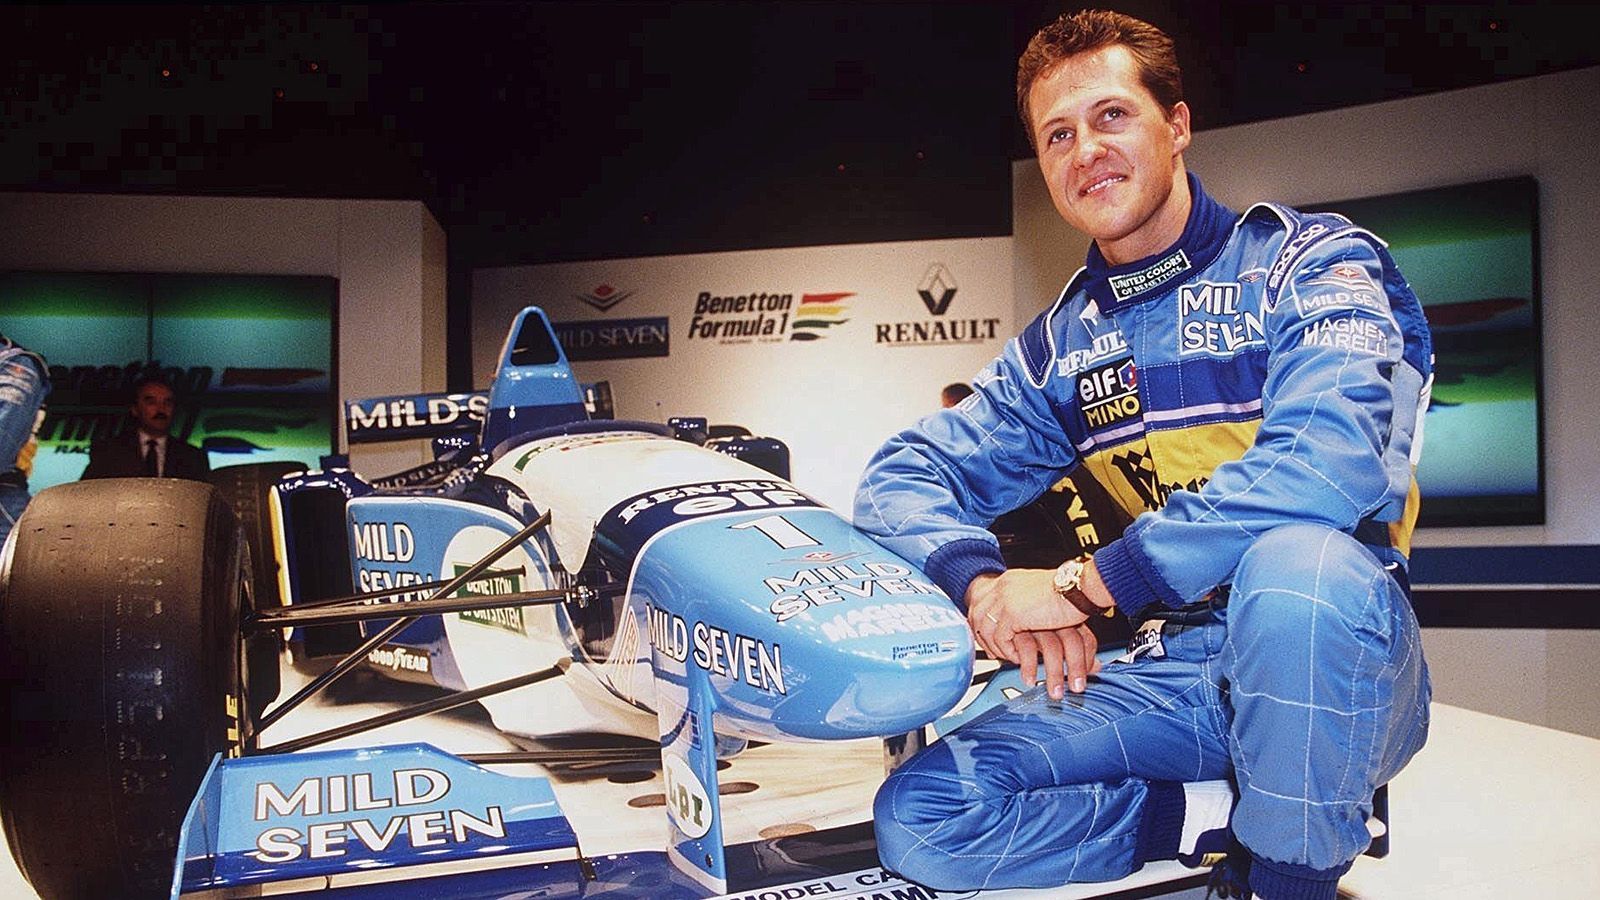 
                <strong>Formel 1</strong><br>
                Für deutsche Sportler war 1994 ein erfolgreiches Jahr. Michael Schumacher gewann mit Benetton als erster Deutscher einen WM-Titel in der Formel 1.
              